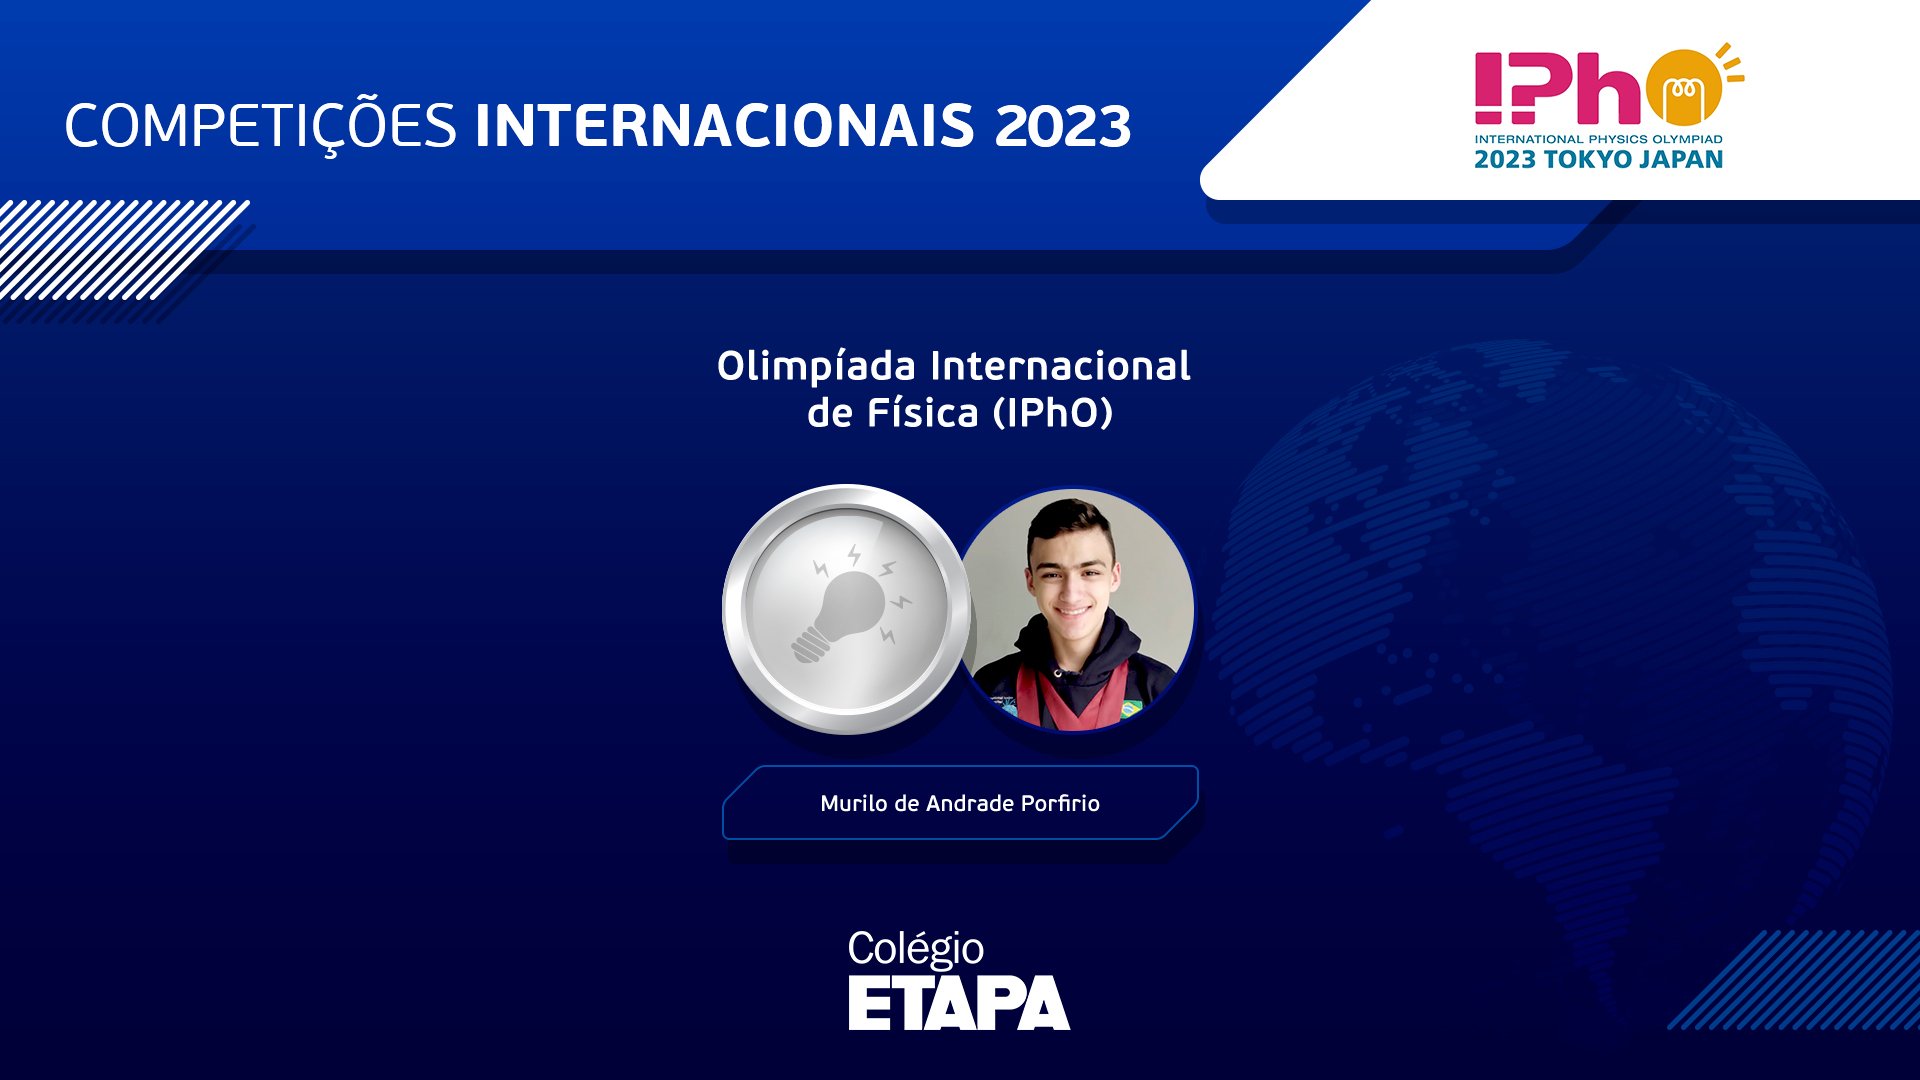 Murilo de Andrade Porfirio, aluno do Colégio Etapa, conquistou uma prata na IPhO 2023.